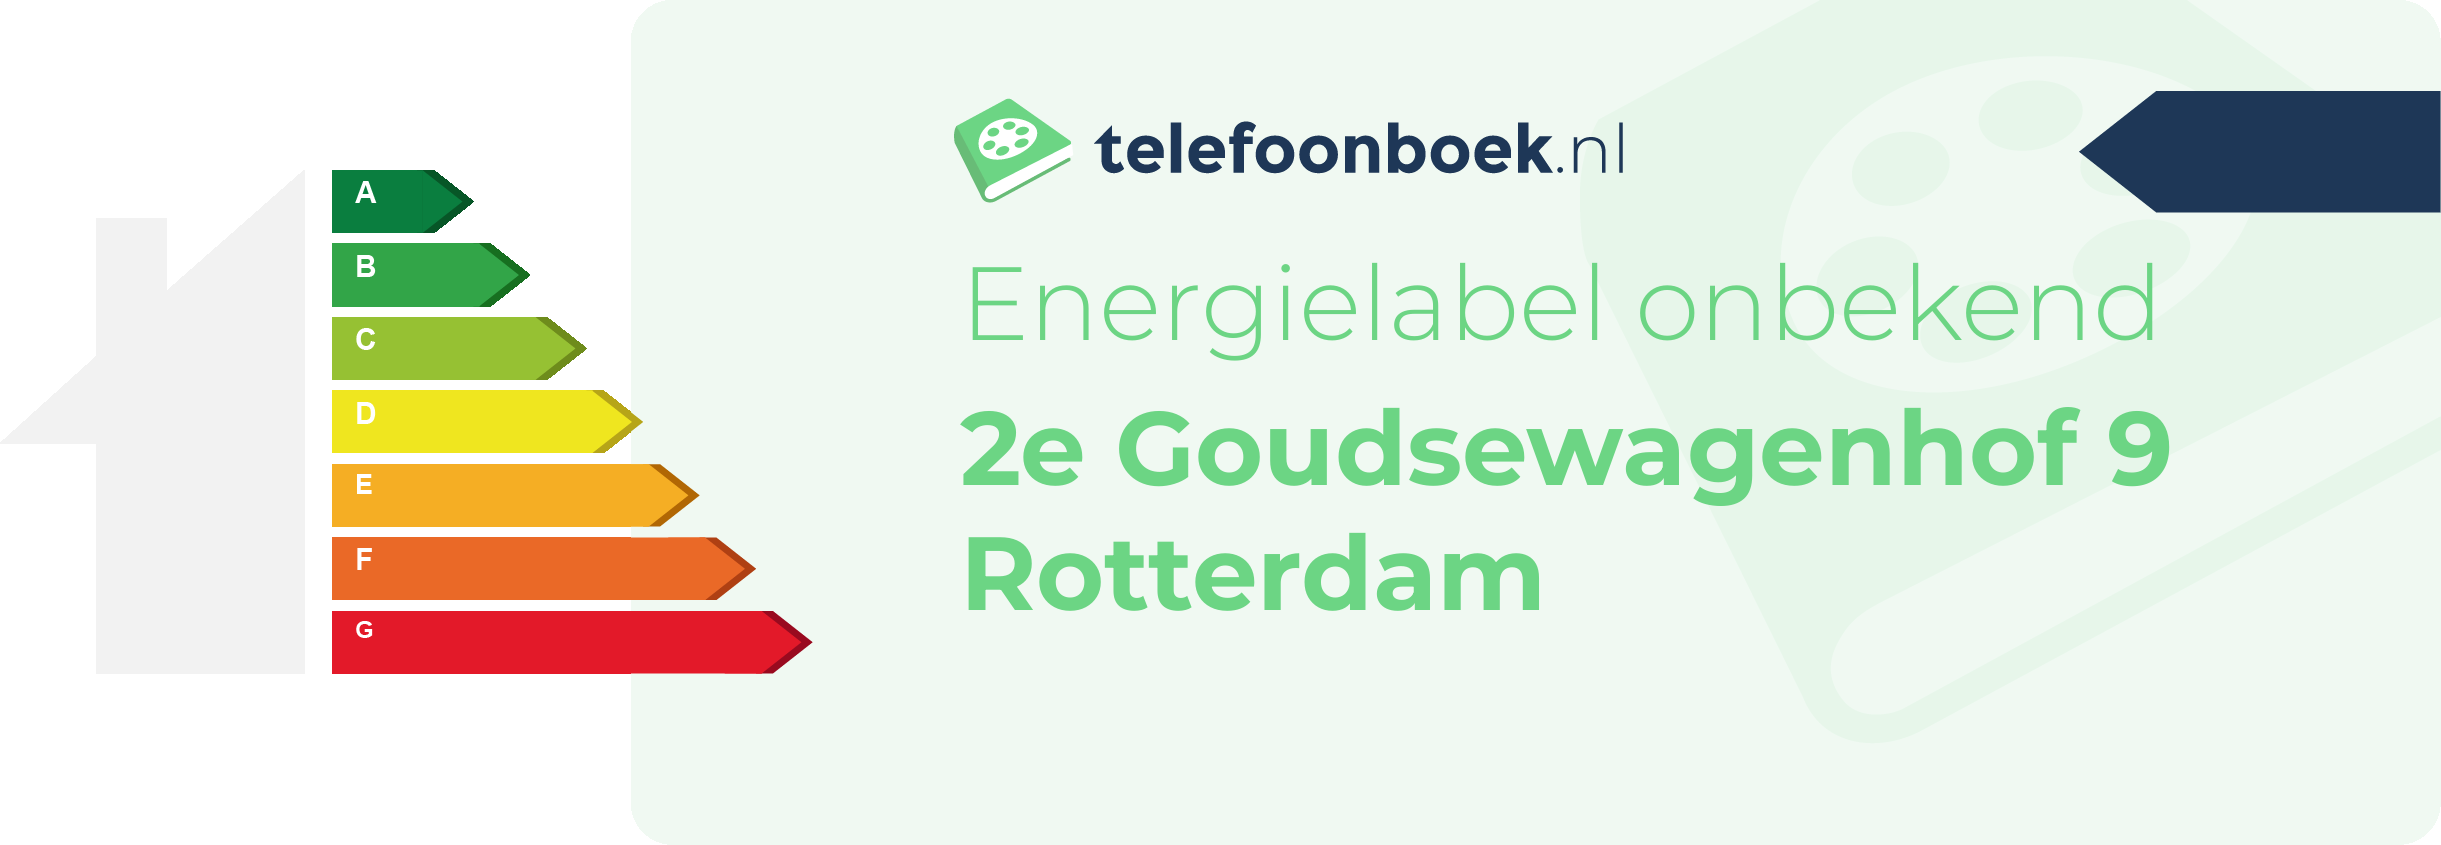 Energielabel 2e Goudsewagenhof 9 Rotterdam